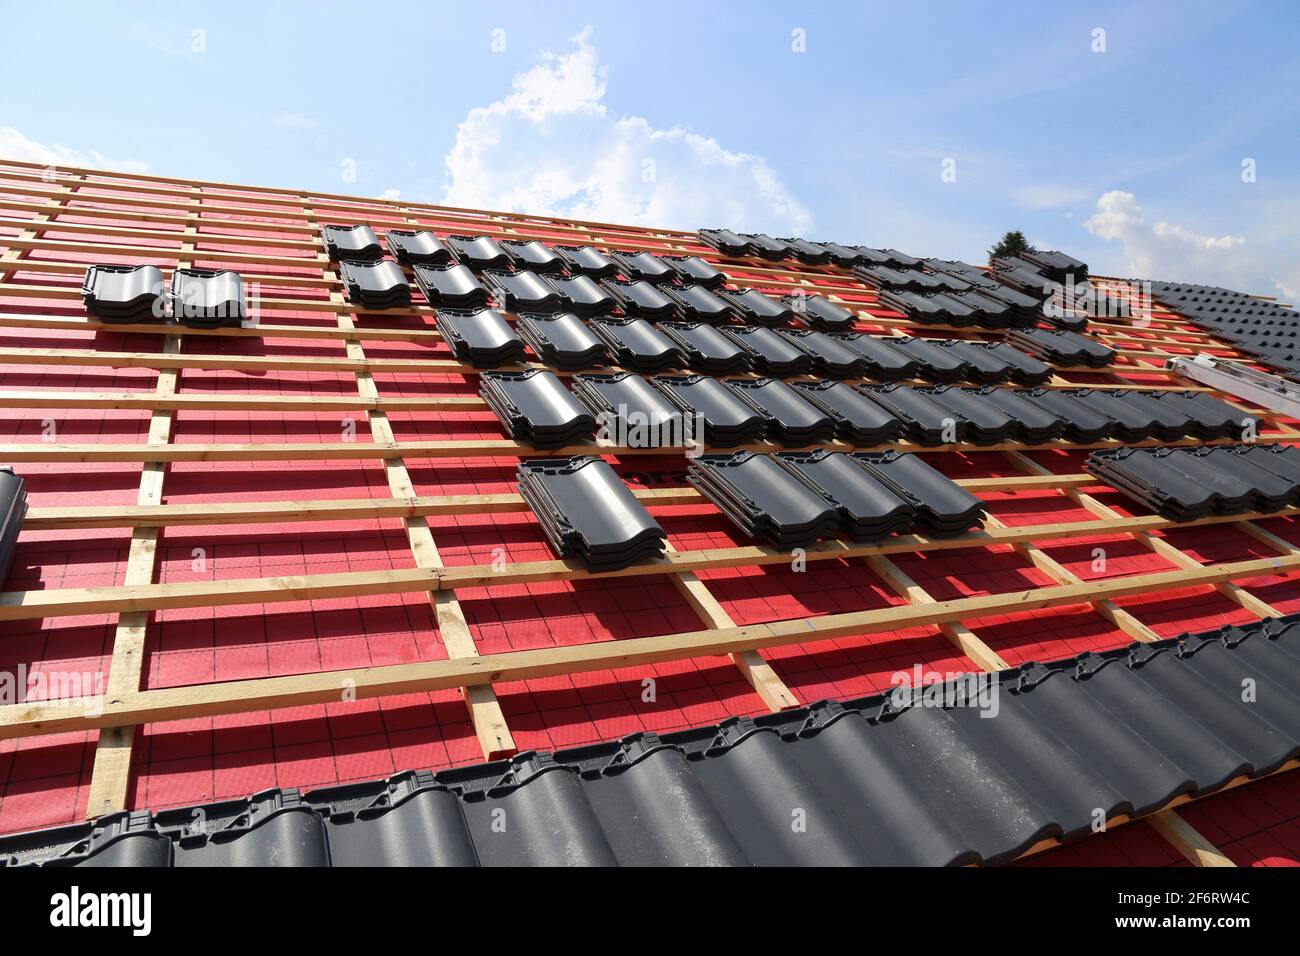 Trabajos de techado, nueva cubierta de un techo de tejas. Foto de stock